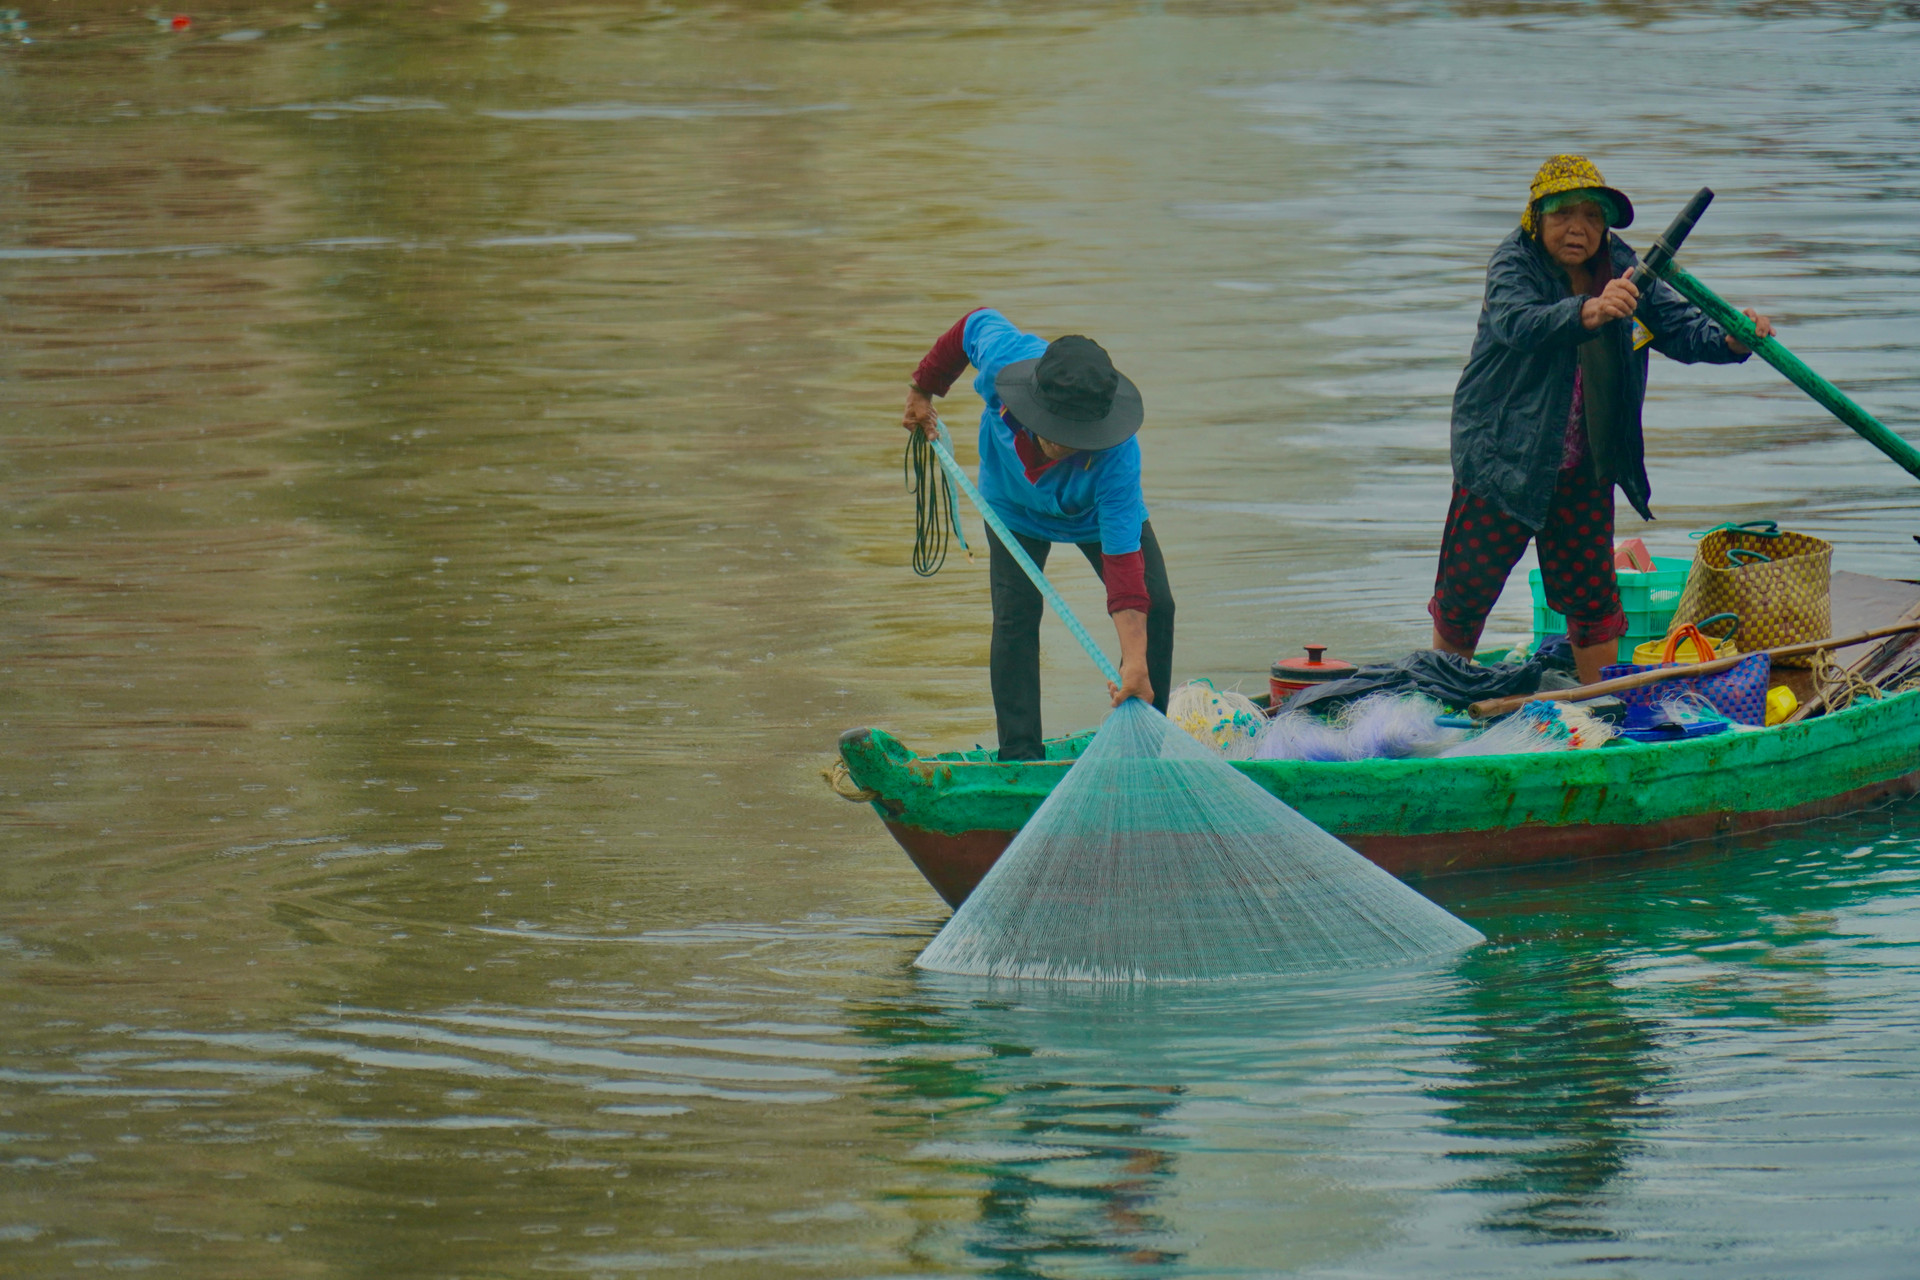 Một dòng sông nổi tiếng dài 76km qua thành phố Phan Phiết của Bình Thuận, có 2 vợ chồng hơn 30 năm đánh cá- Ảnh 4.